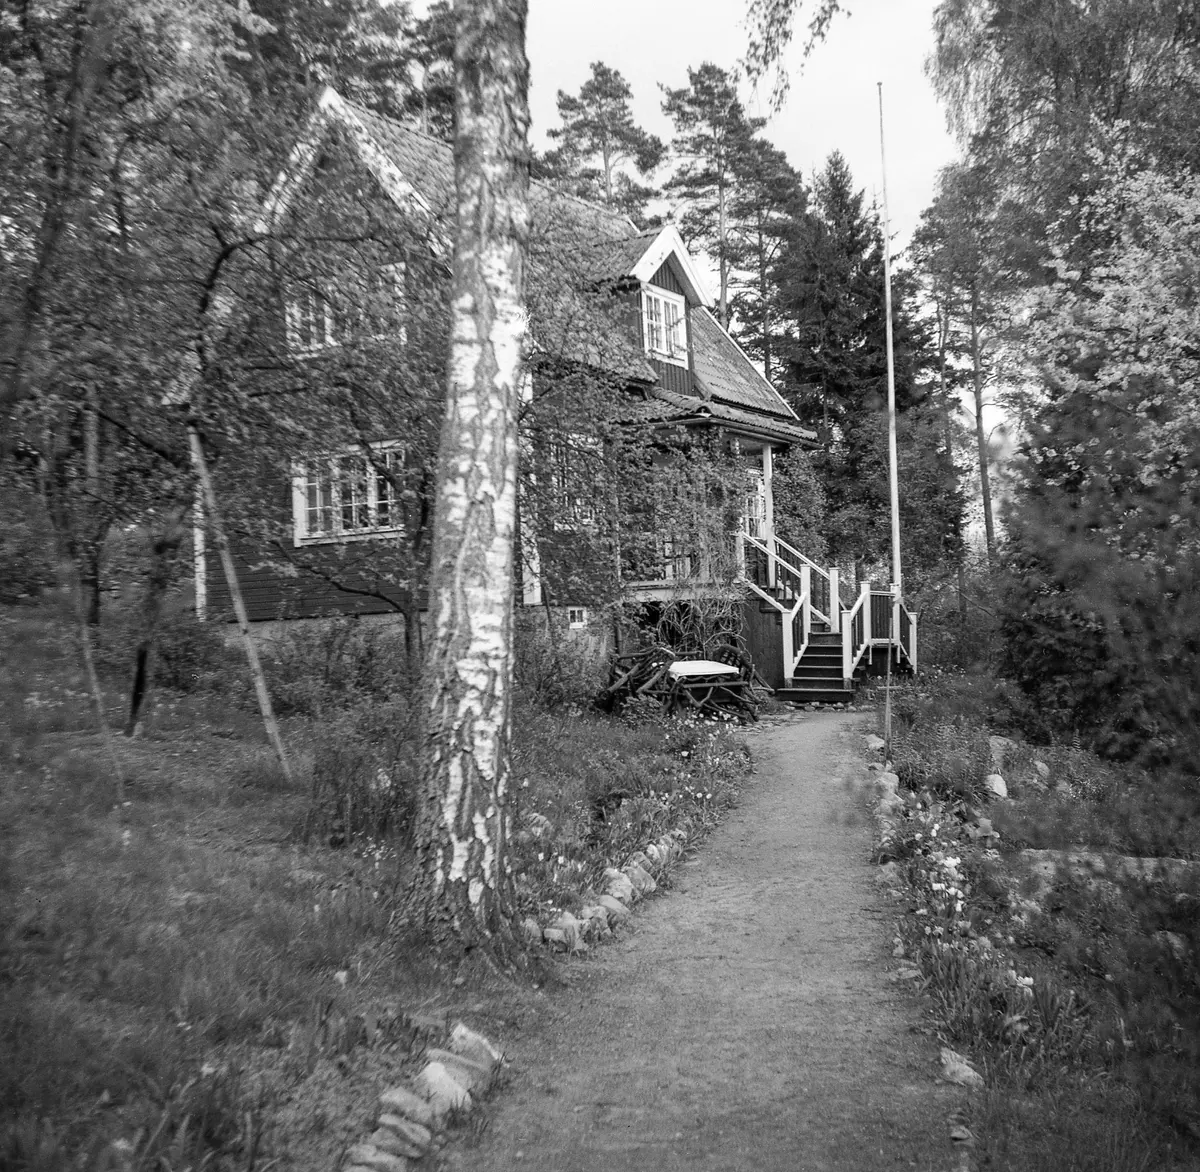 Huset byggt av Anna och Isak Lundgren.
Först sommarhus men blev permanentbostad i början av 1920-talet.
Huset är idag rivet.
Låg i pos. RT90 6594510 nord och 1630010 ost, då med infart från Granåsvägen.
(Ligger ung. vid nuv. Granåsvägen 19. THF:s kommentar)